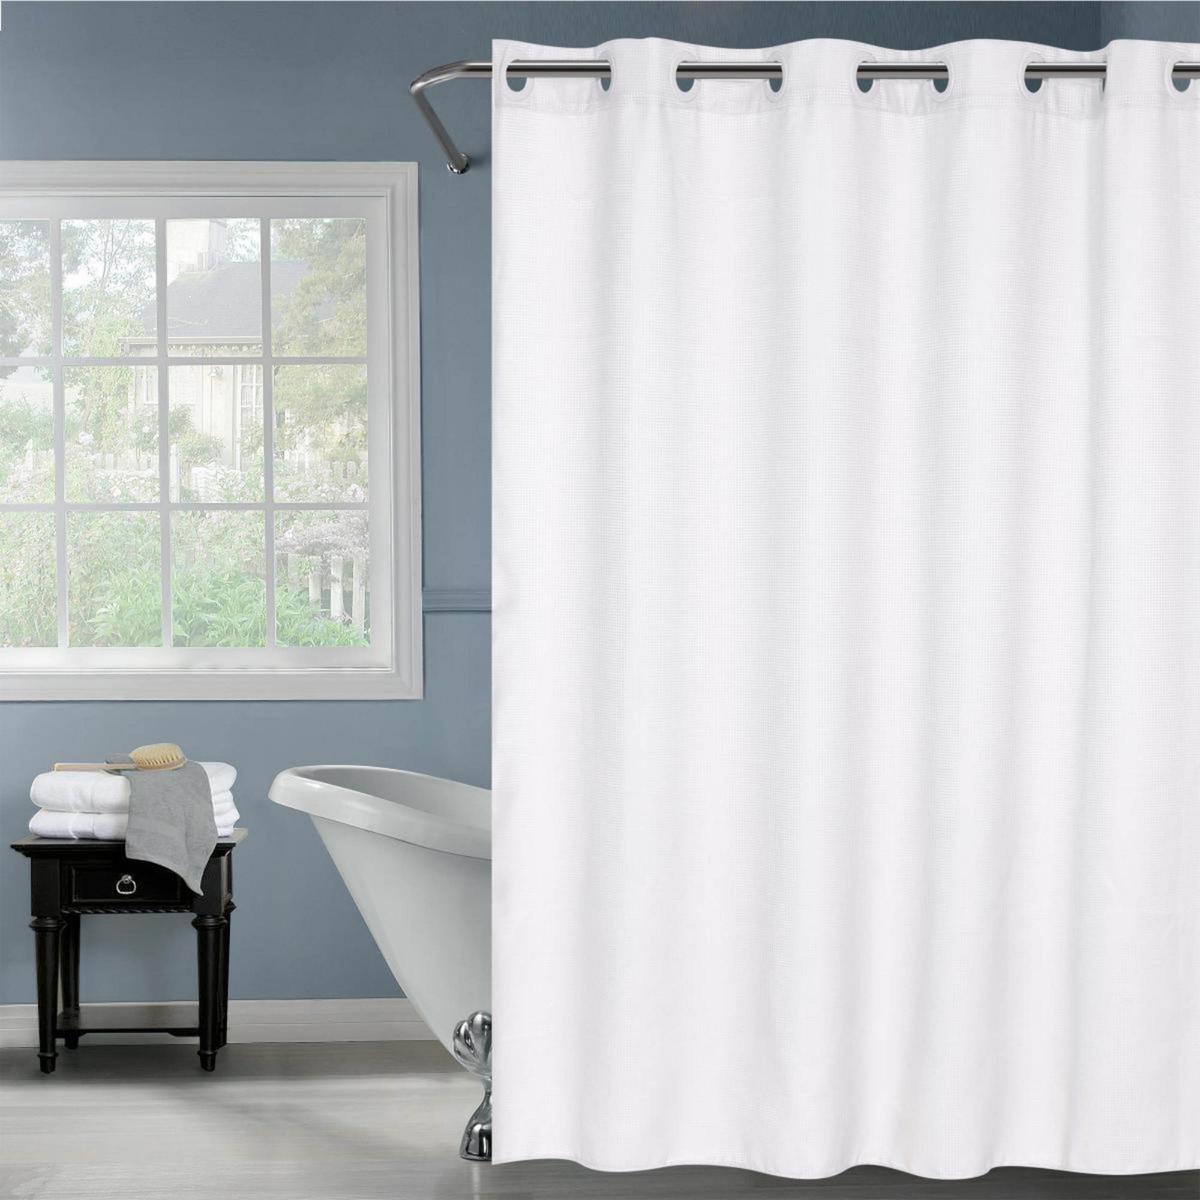 Cortina de baño de poliéster Hookless® tipo rejilla de 2.03 m color blanco